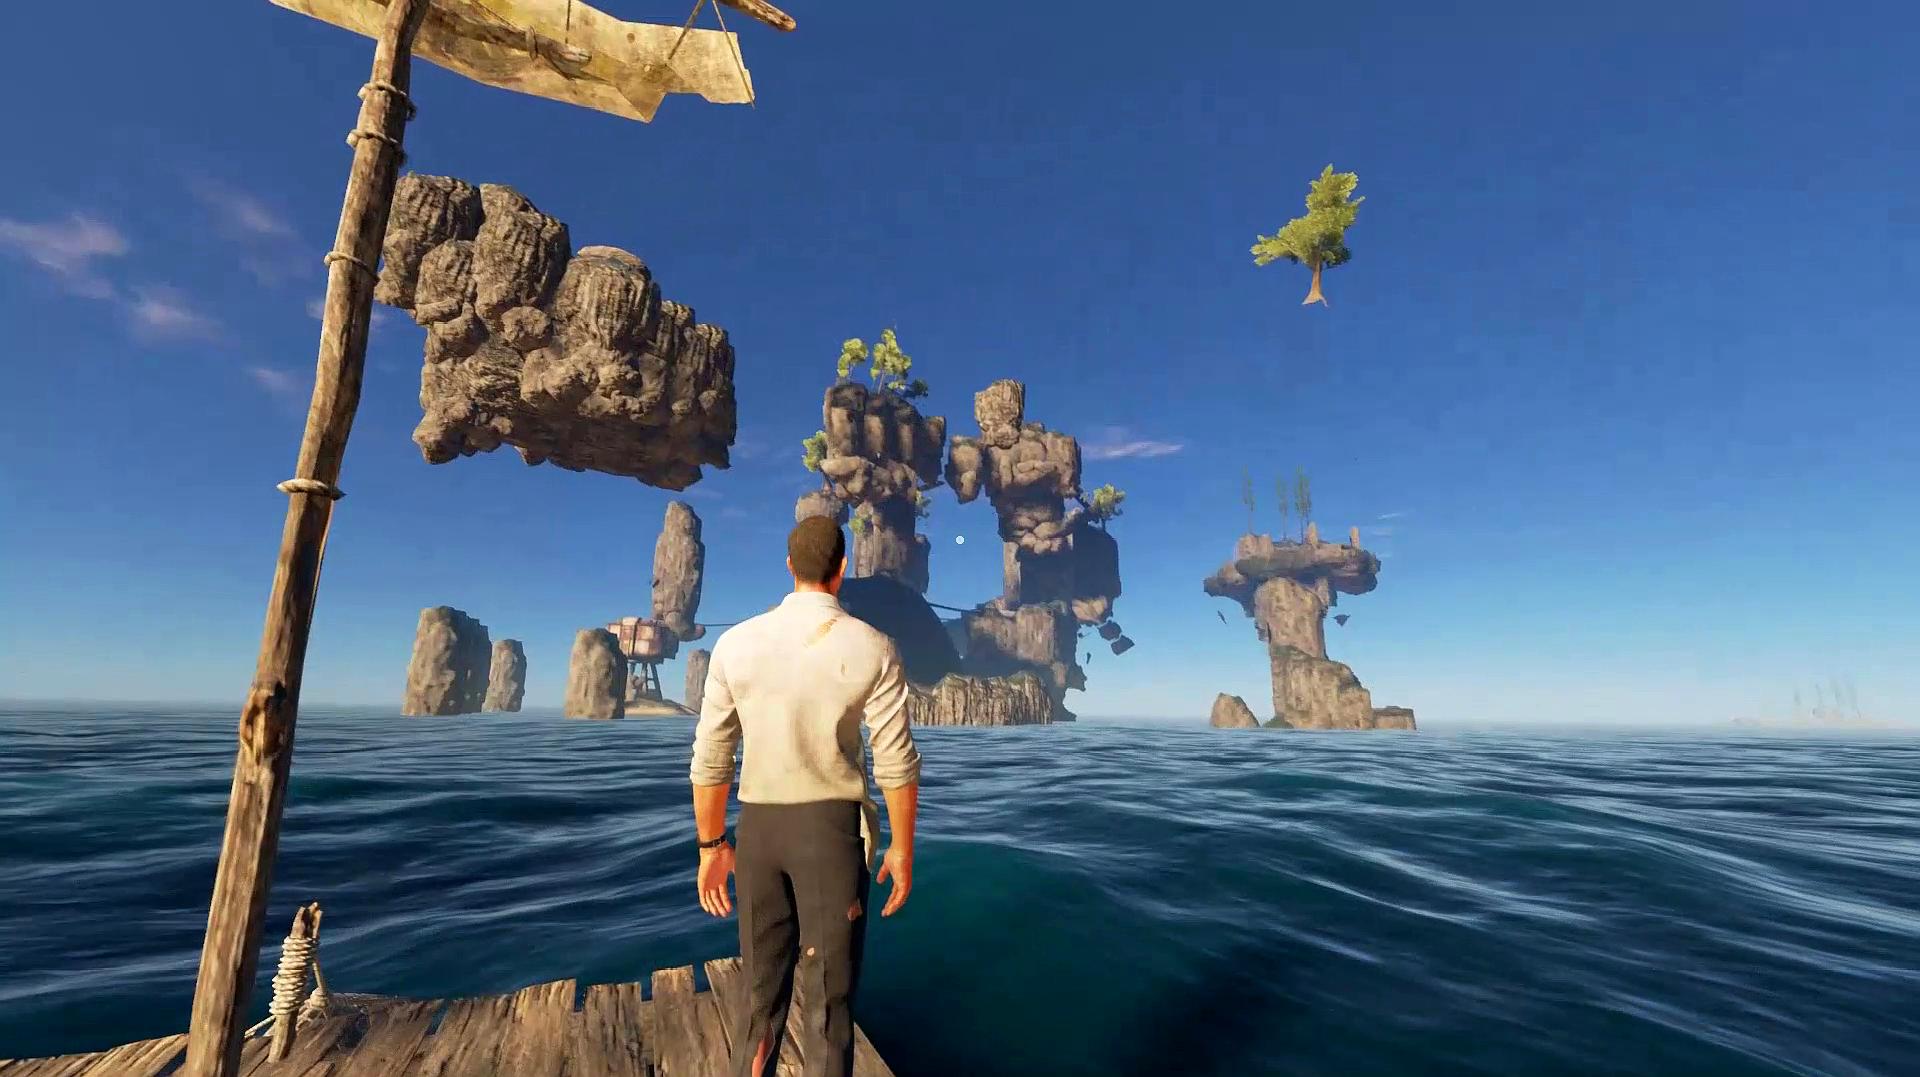 达哥诺兰德:生存类游戏《荒岛求生2》的视频集锦